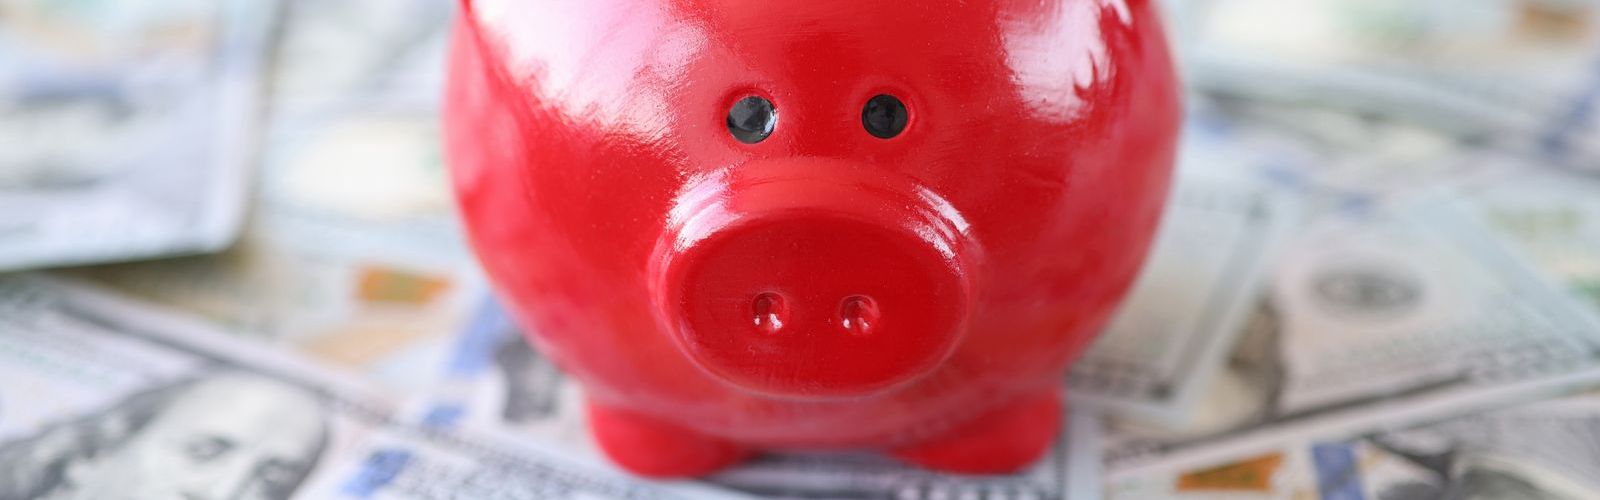 red piggy bank (bs425030777).jpg